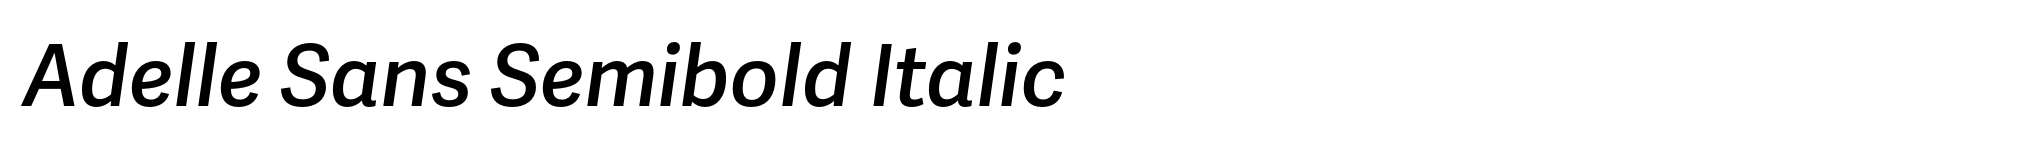 Adelle Sans Semibold Italic image